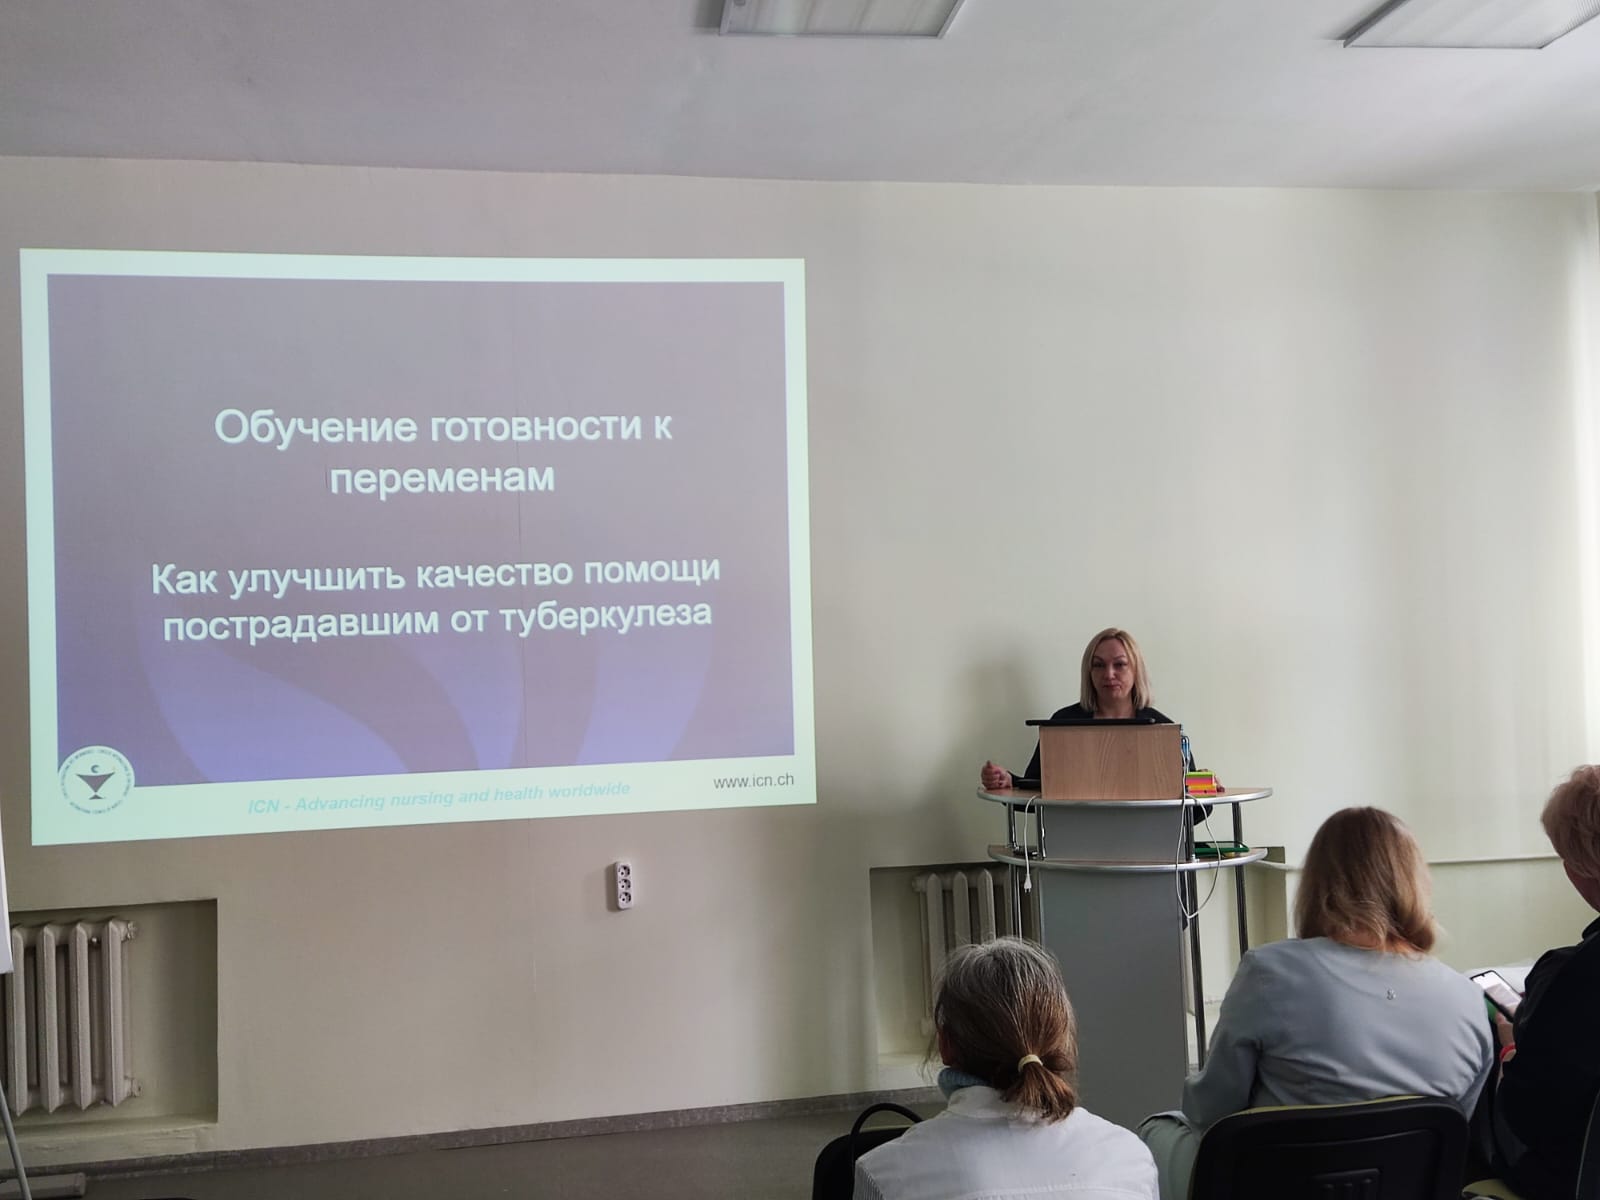 Первая выездная школа РАМС по фтизиатрии в Челябинском регионе